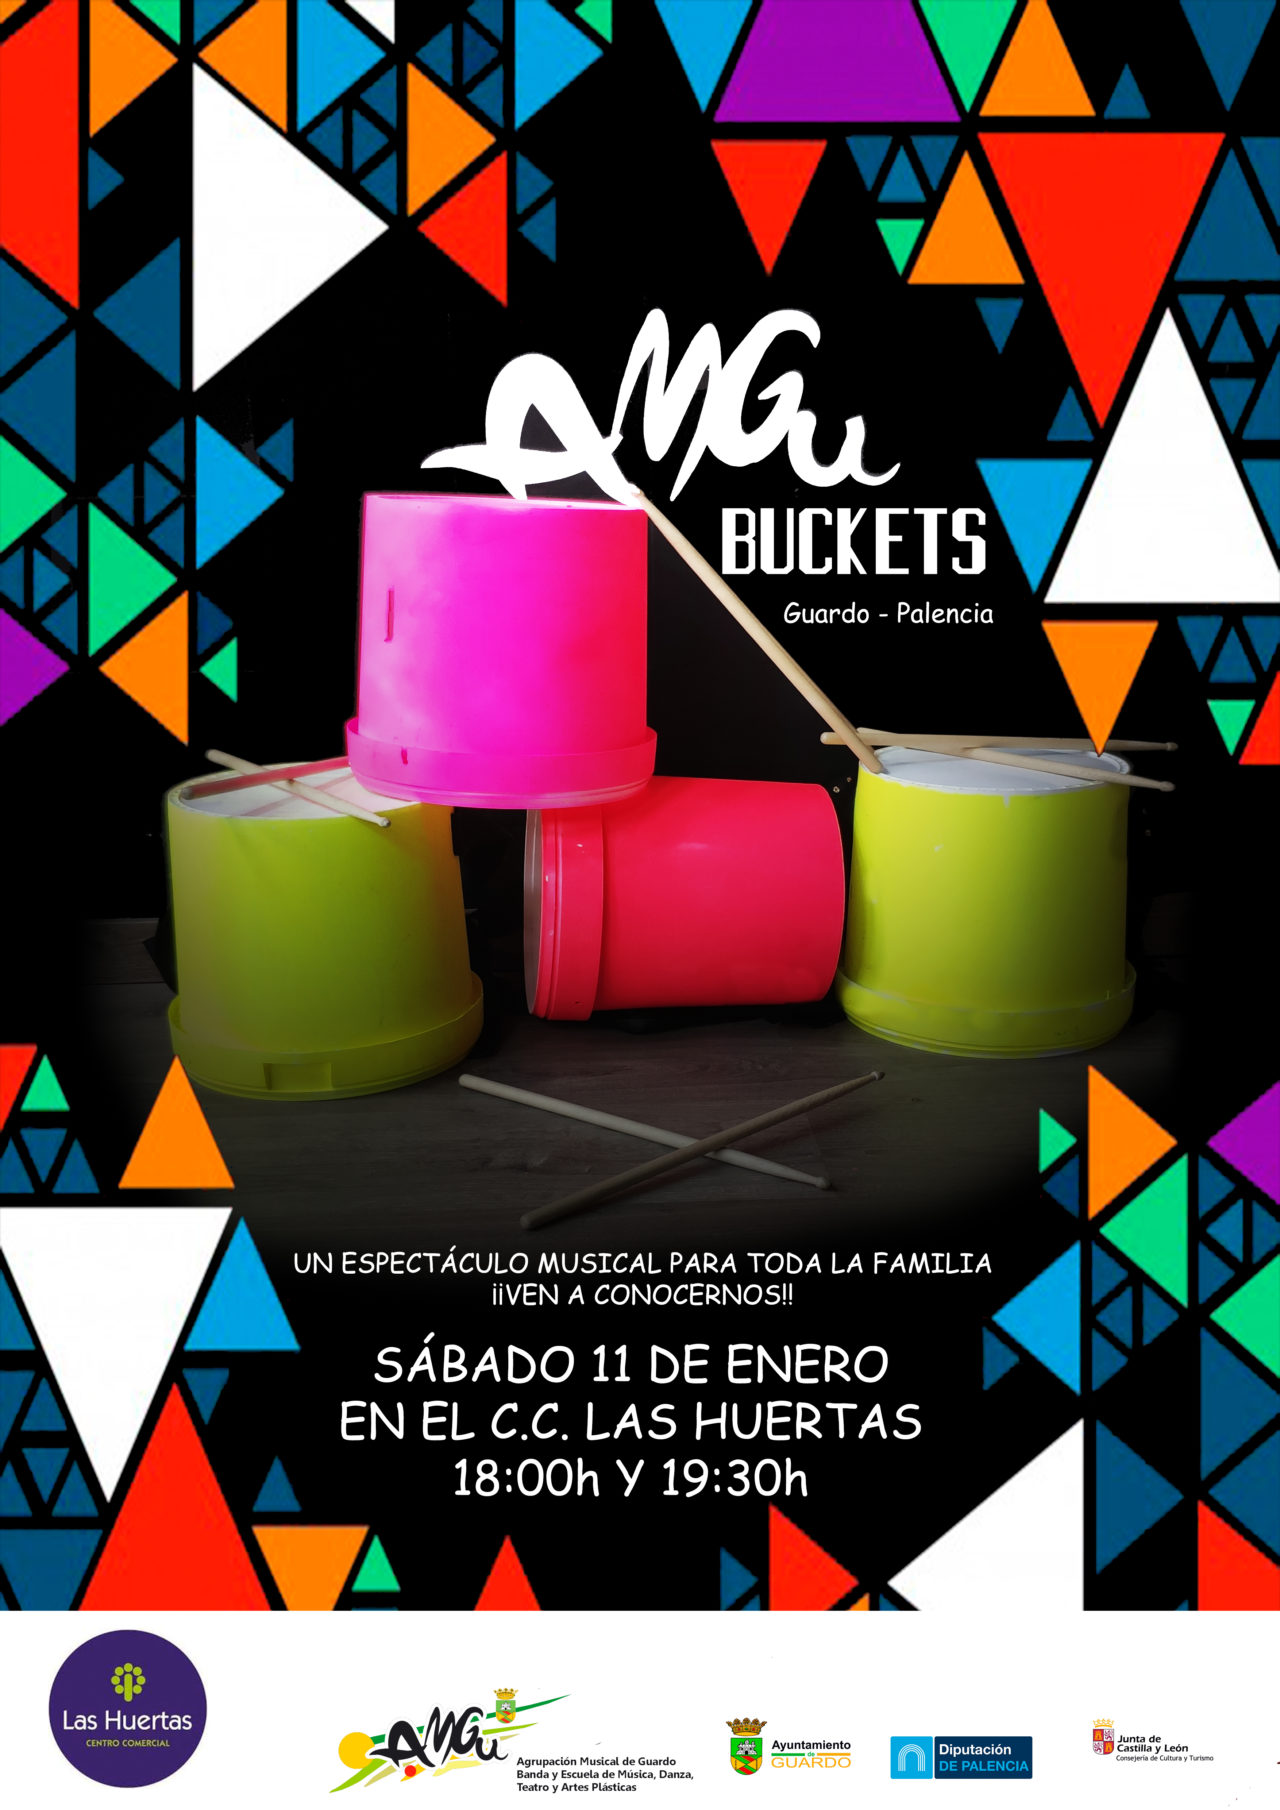 https://www.lashuertas.es/wp-content/uploads/2020/01/amgu-buckets-1280x1810.jpg